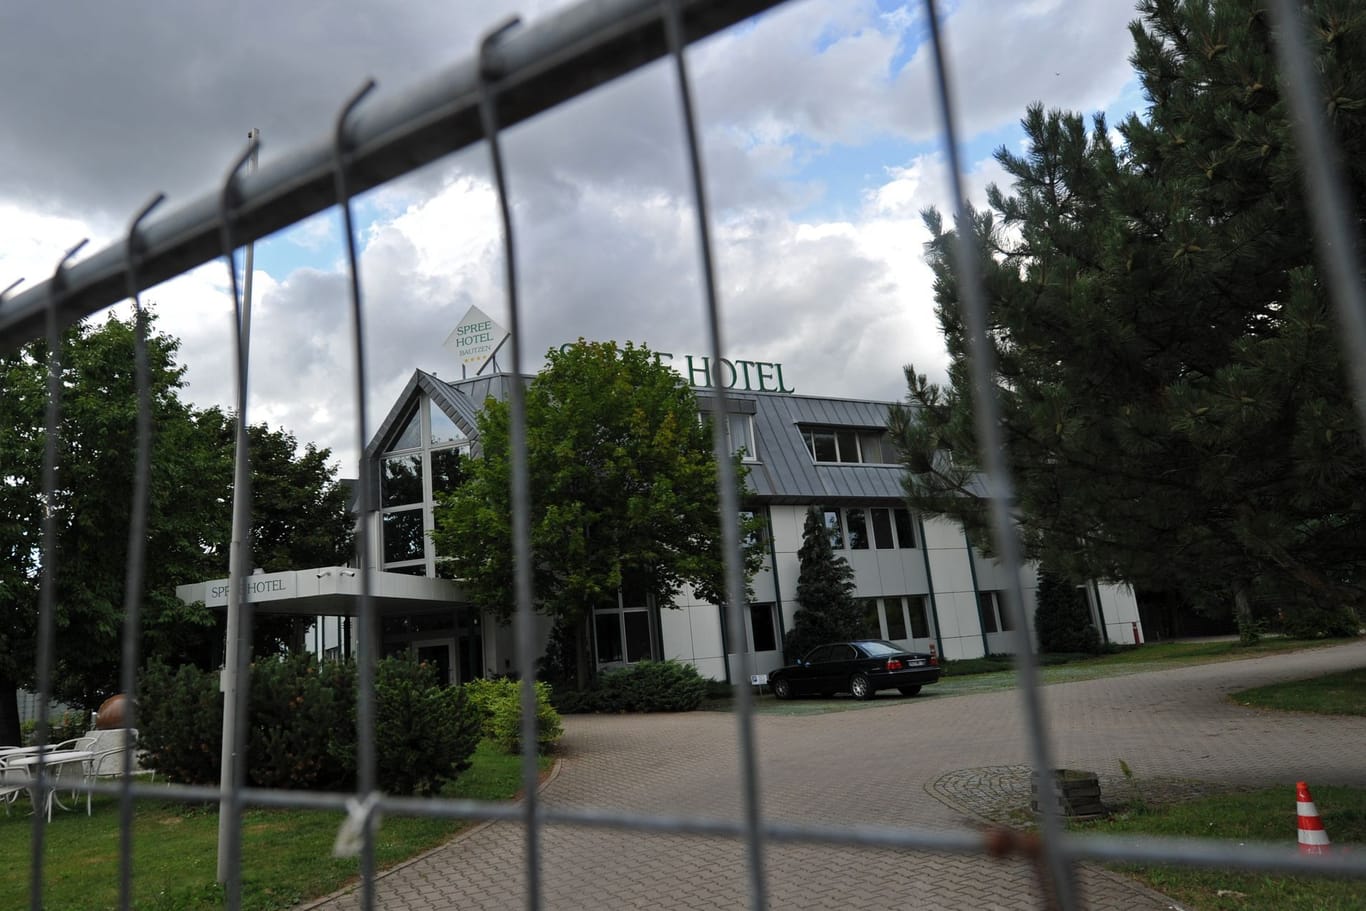 Das "Spreehotel" in Bautzen: Dort sollten geflüchtete Menschen untergebracht werden.